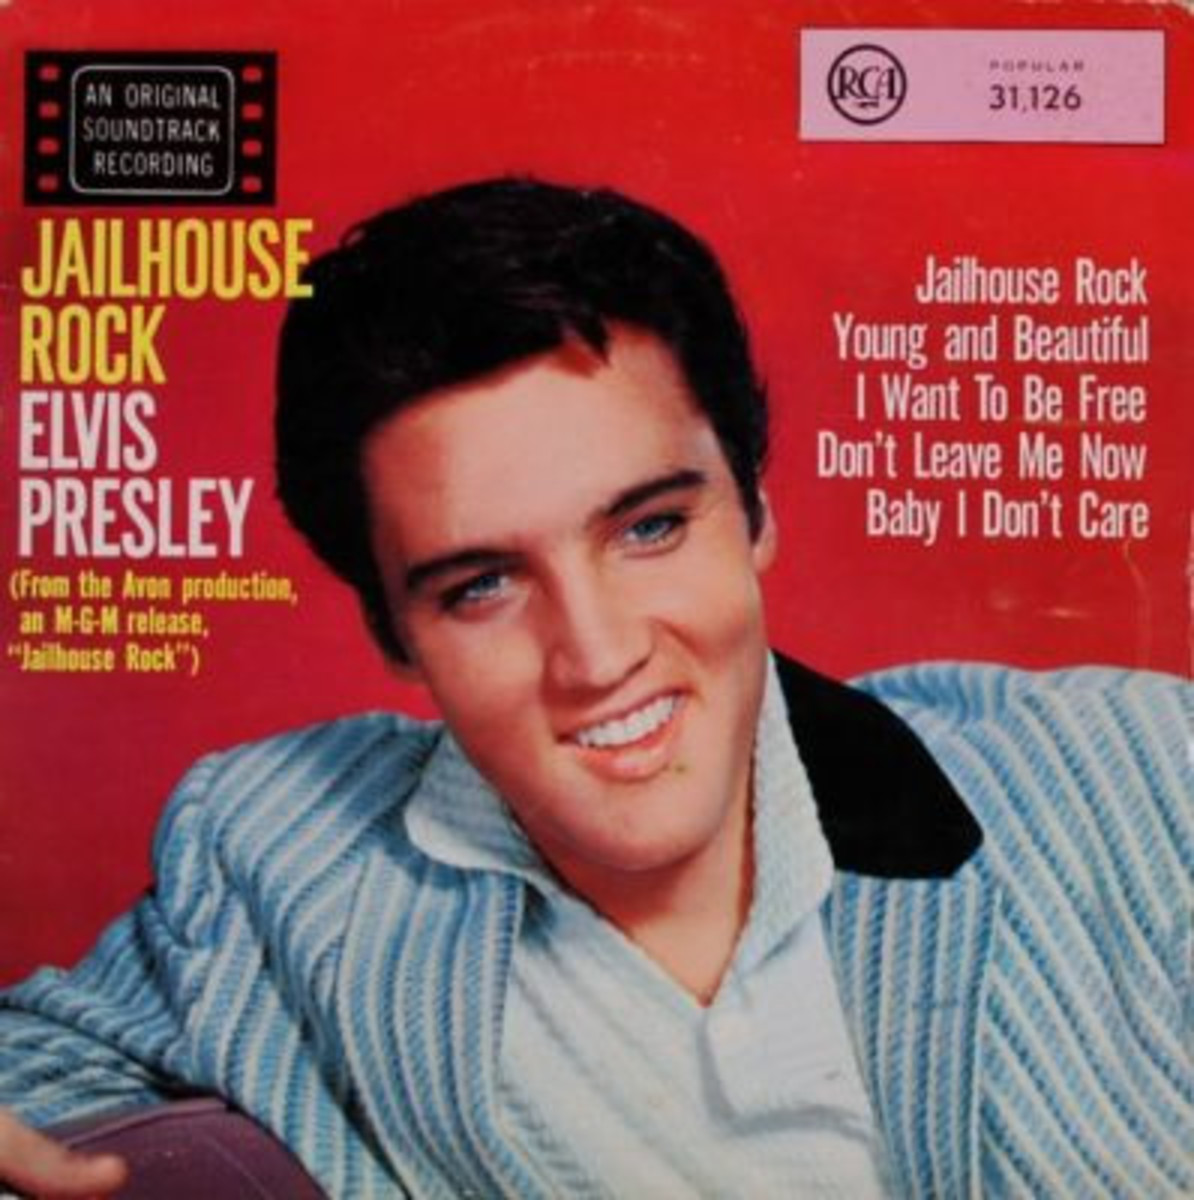 Jailhouse Rock 1958 soundtrack on RCA